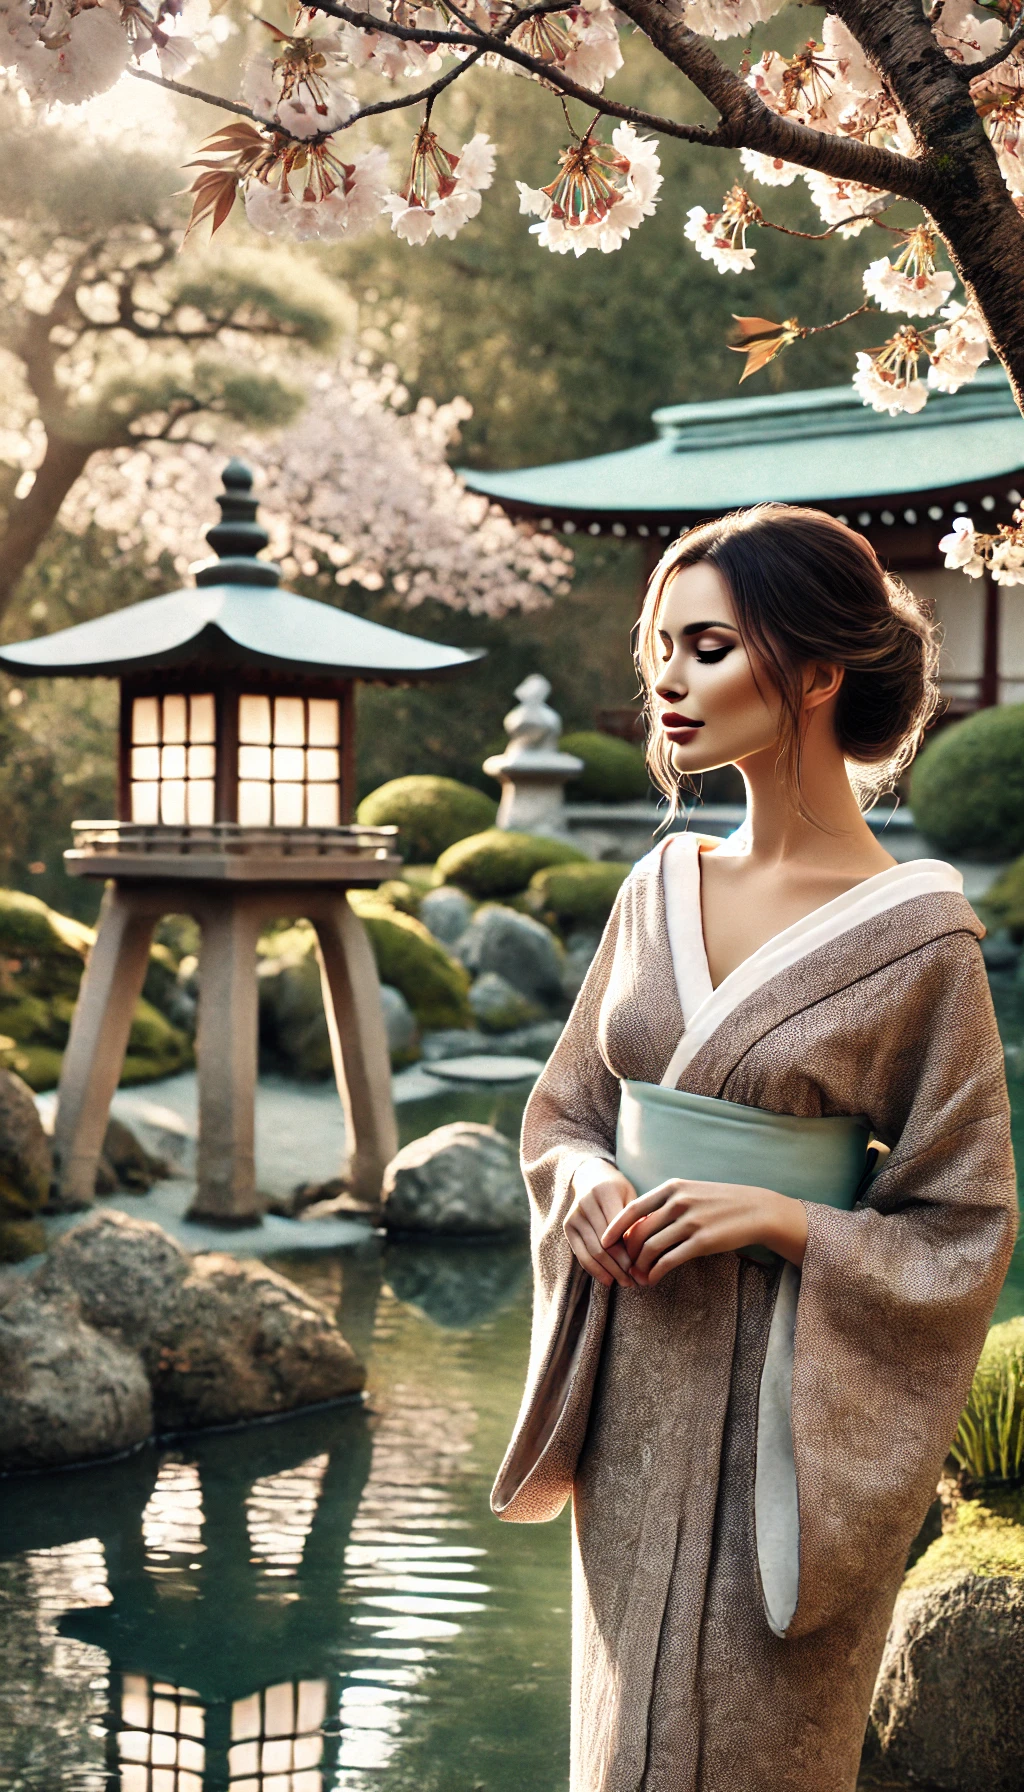 Shikata ga nai: Akzeptanz als Schlüssel zur Resilienz und Gelassenheit. Japanische Weisheiten und Techniken. Konzepte für Erfolg. Raus aus der Komfortzone und rein in das Leben. Lebenskunst und kontinuierliche Verbesserung im Alltag.